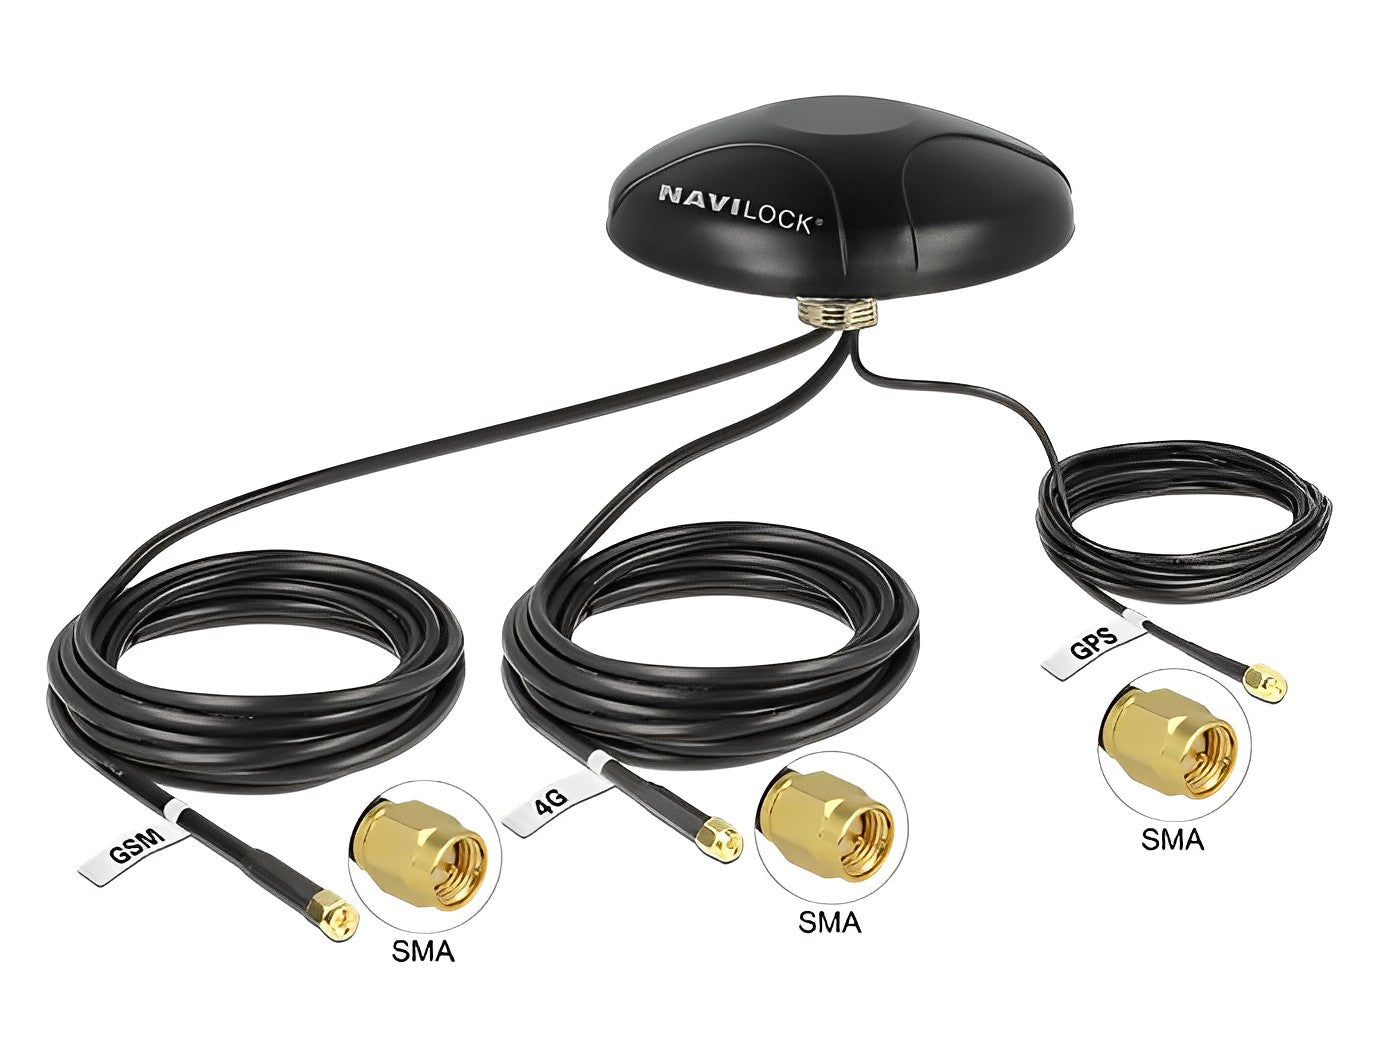 אנטנה כלל כיוונית Multiband GNSS GALILEO GPS LTE UMTS GSM חיצונית IP67 עם 3 מחברים SMA plug - delock.israel